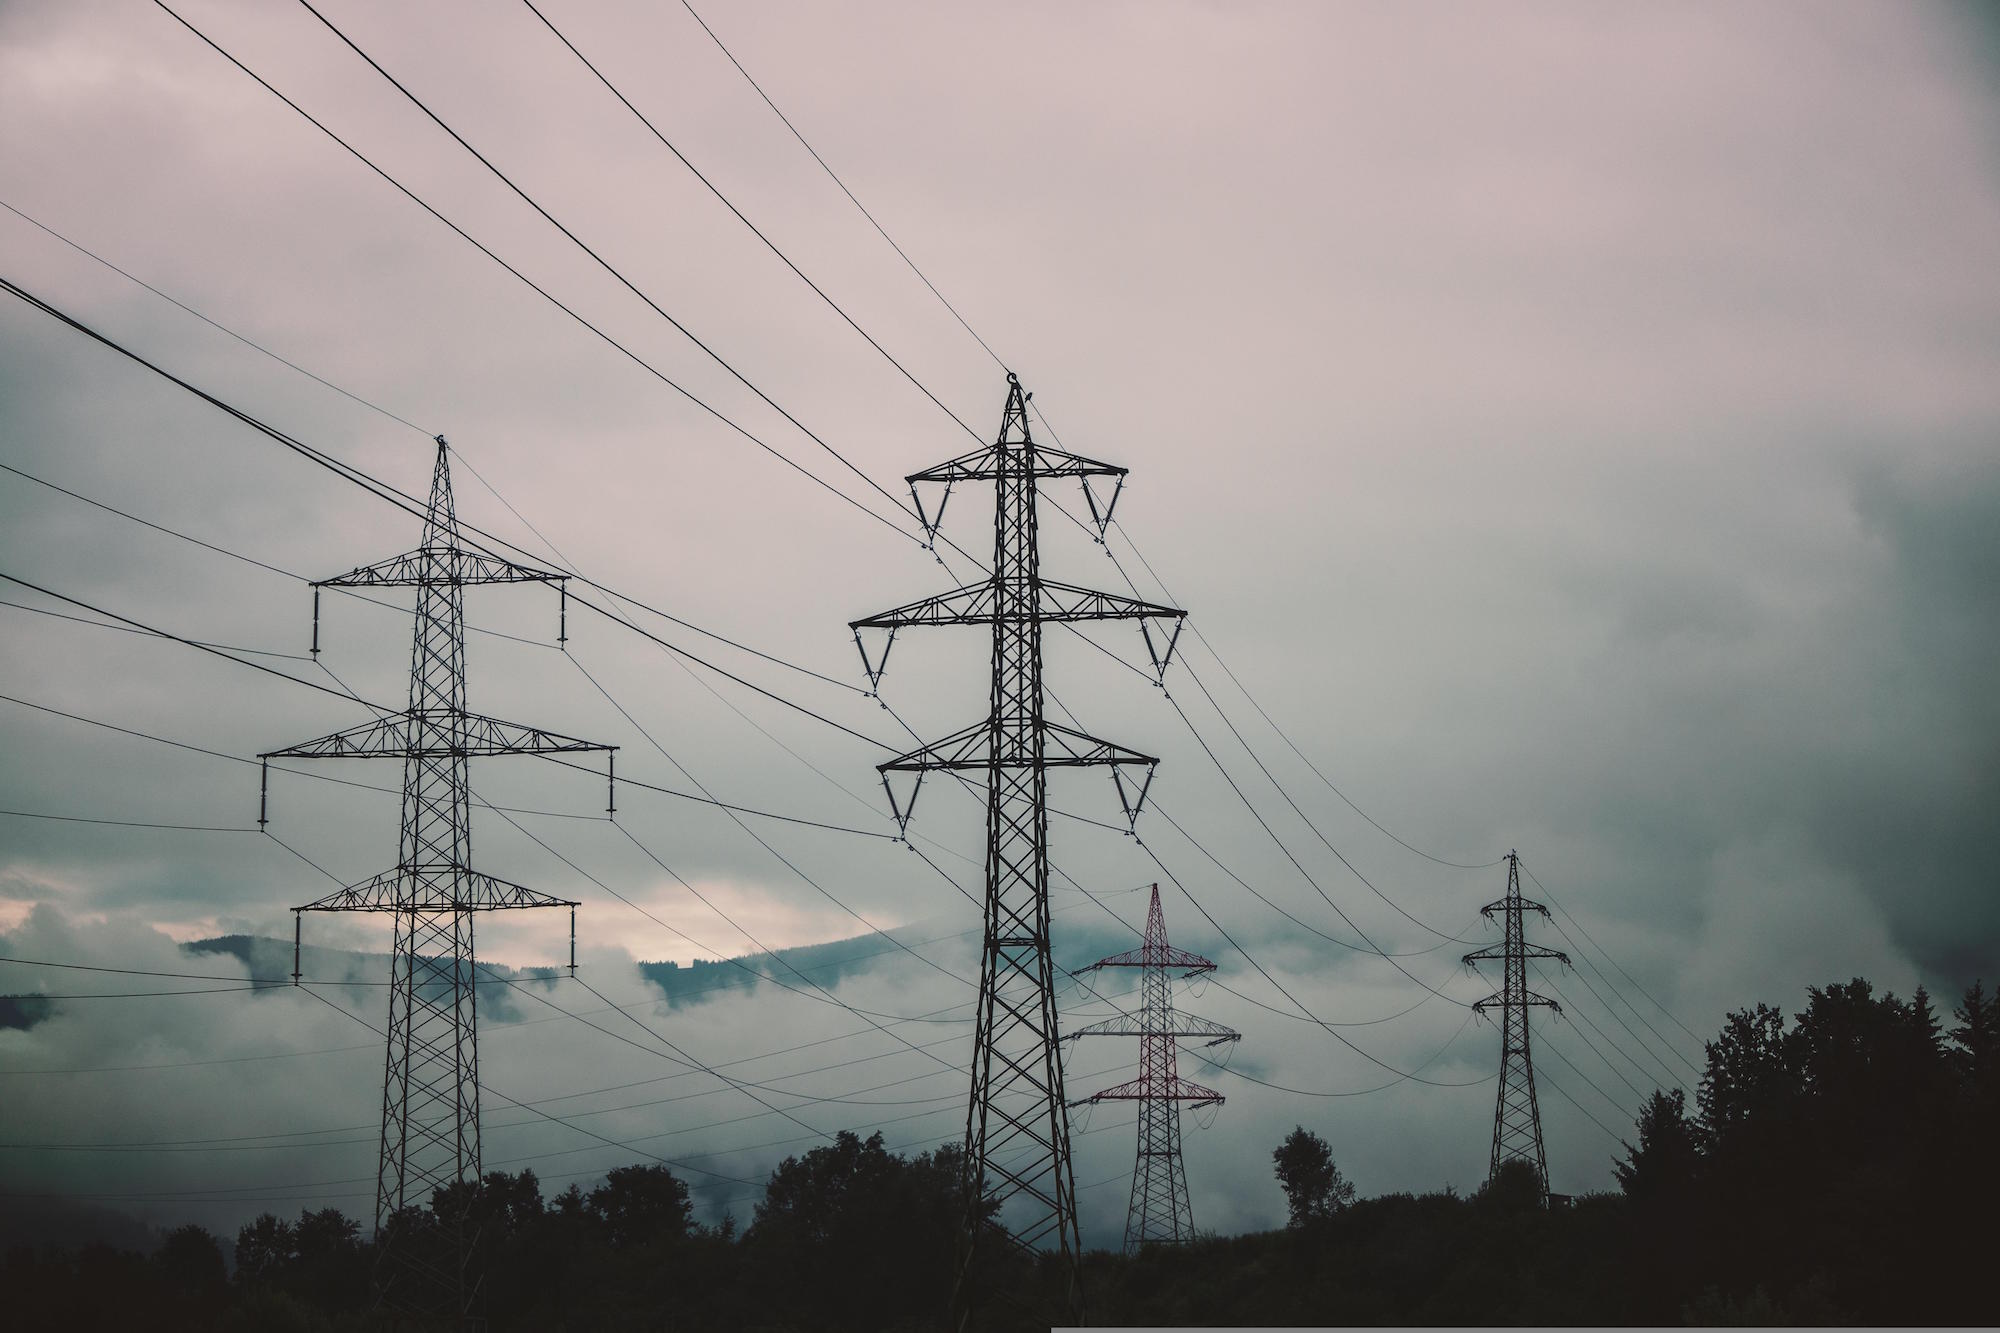 Die Energiepreise sind in den vergangenen Wochen stark gestiegen. Strom und Gas sind für viele mittlerweile unbezahlbar geworden. (c) www.pixabay.com